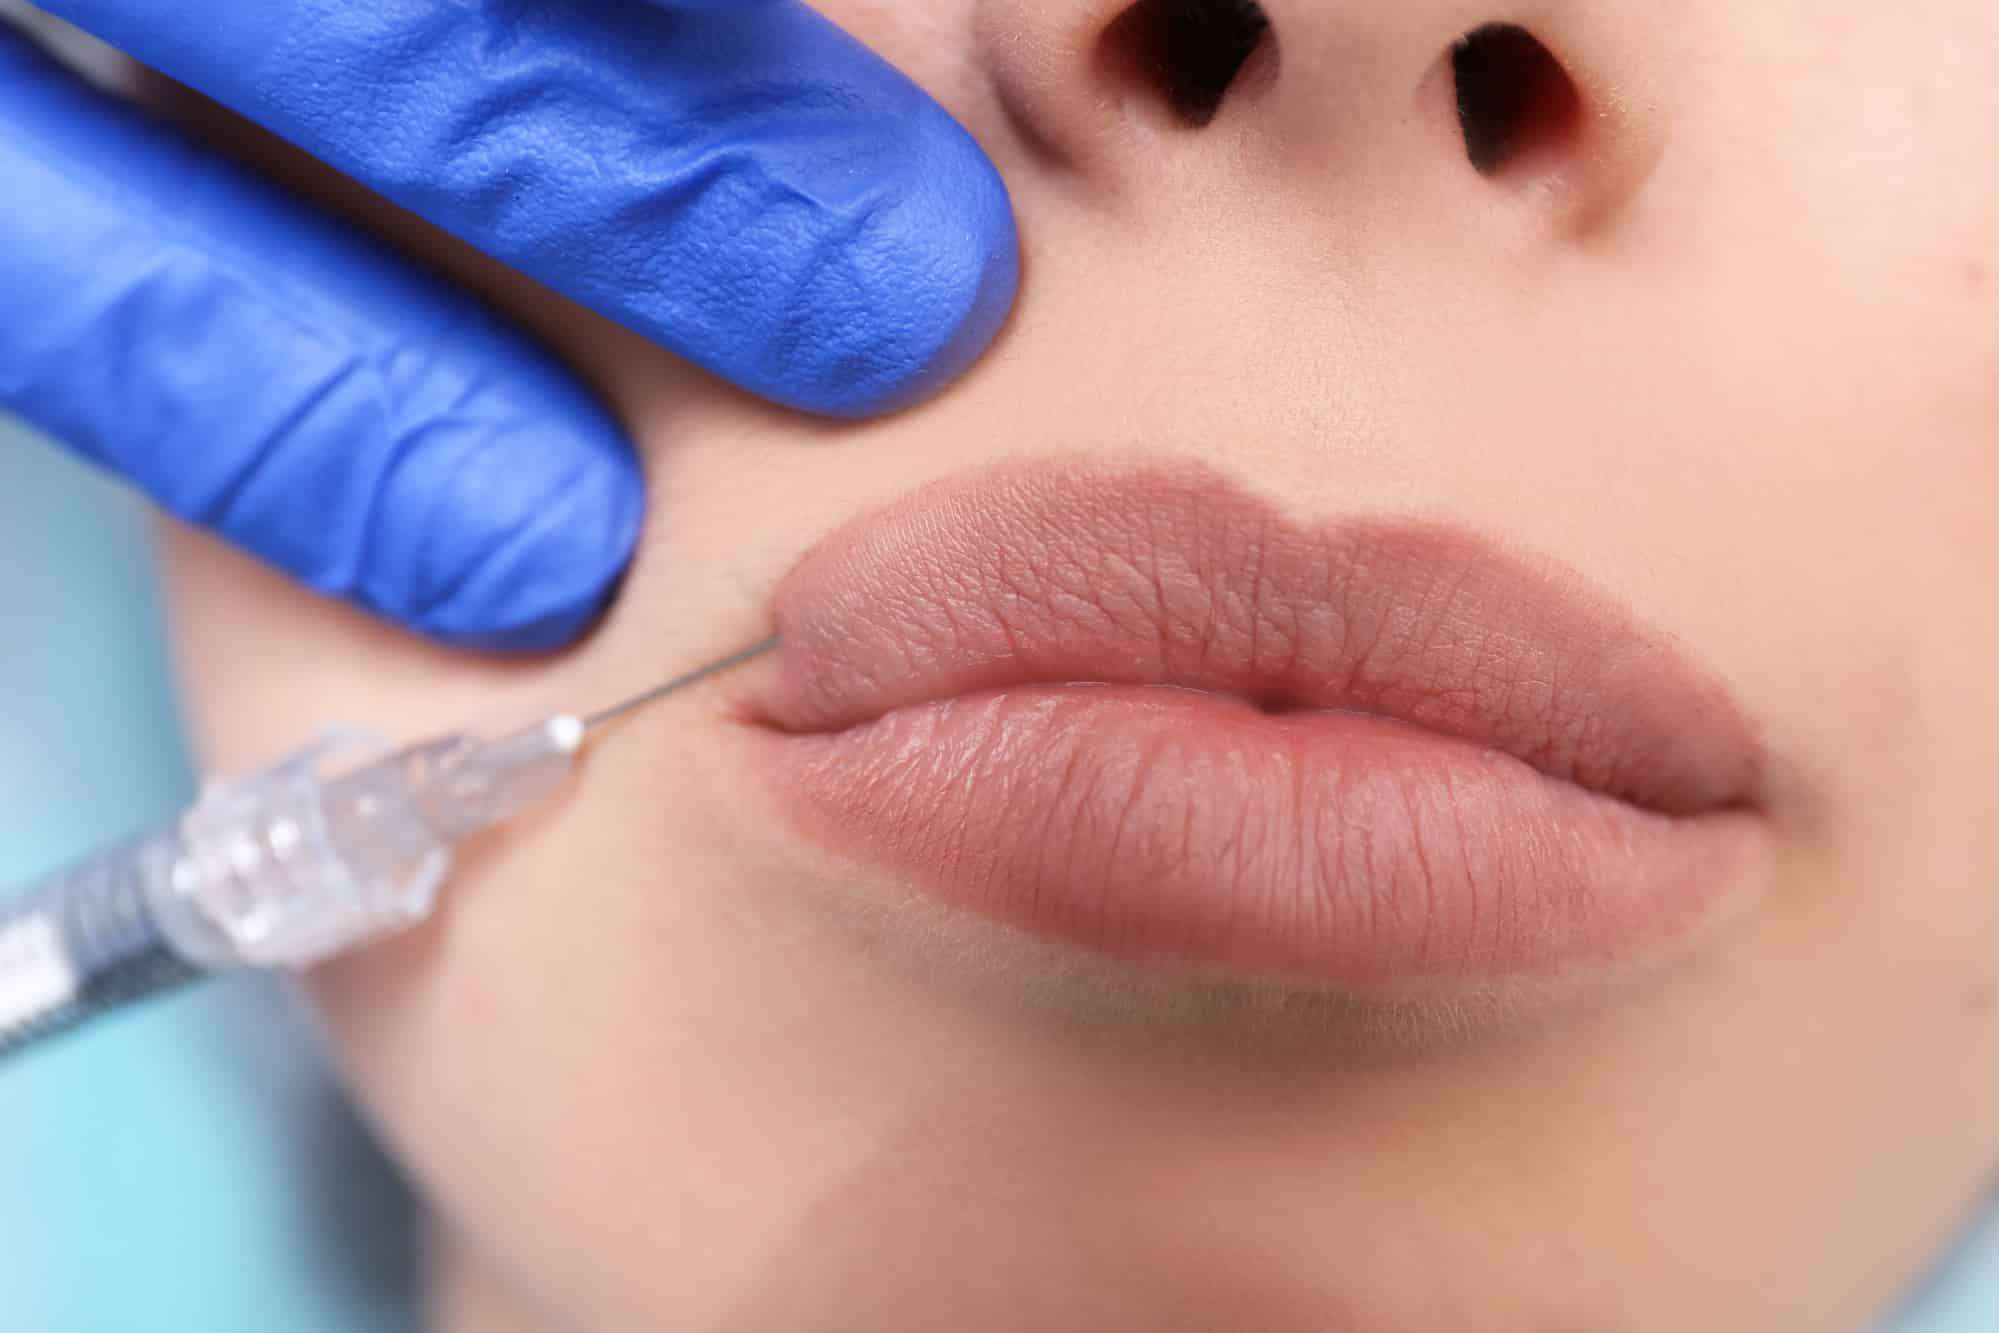 Контруная пластика губ препаратом Belotero Lips Contour 0,6 мл